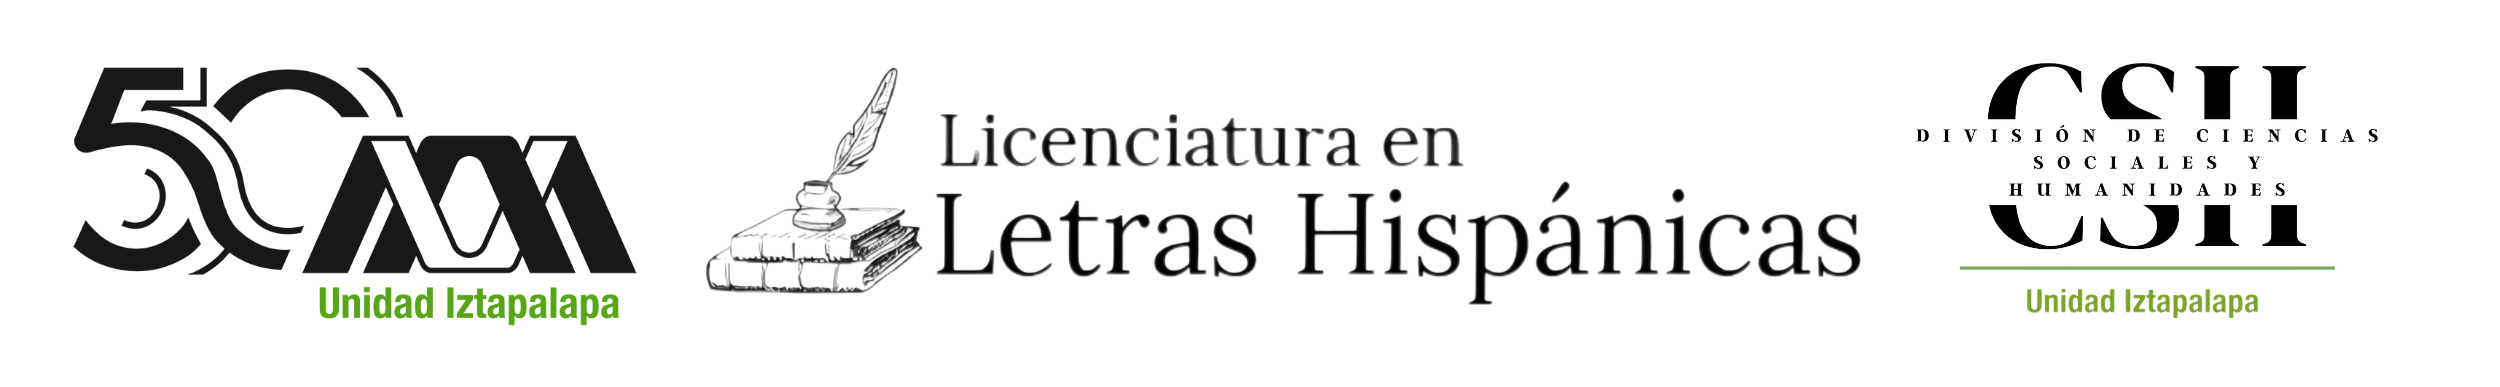 Licenciatura en Letras Hispánicas